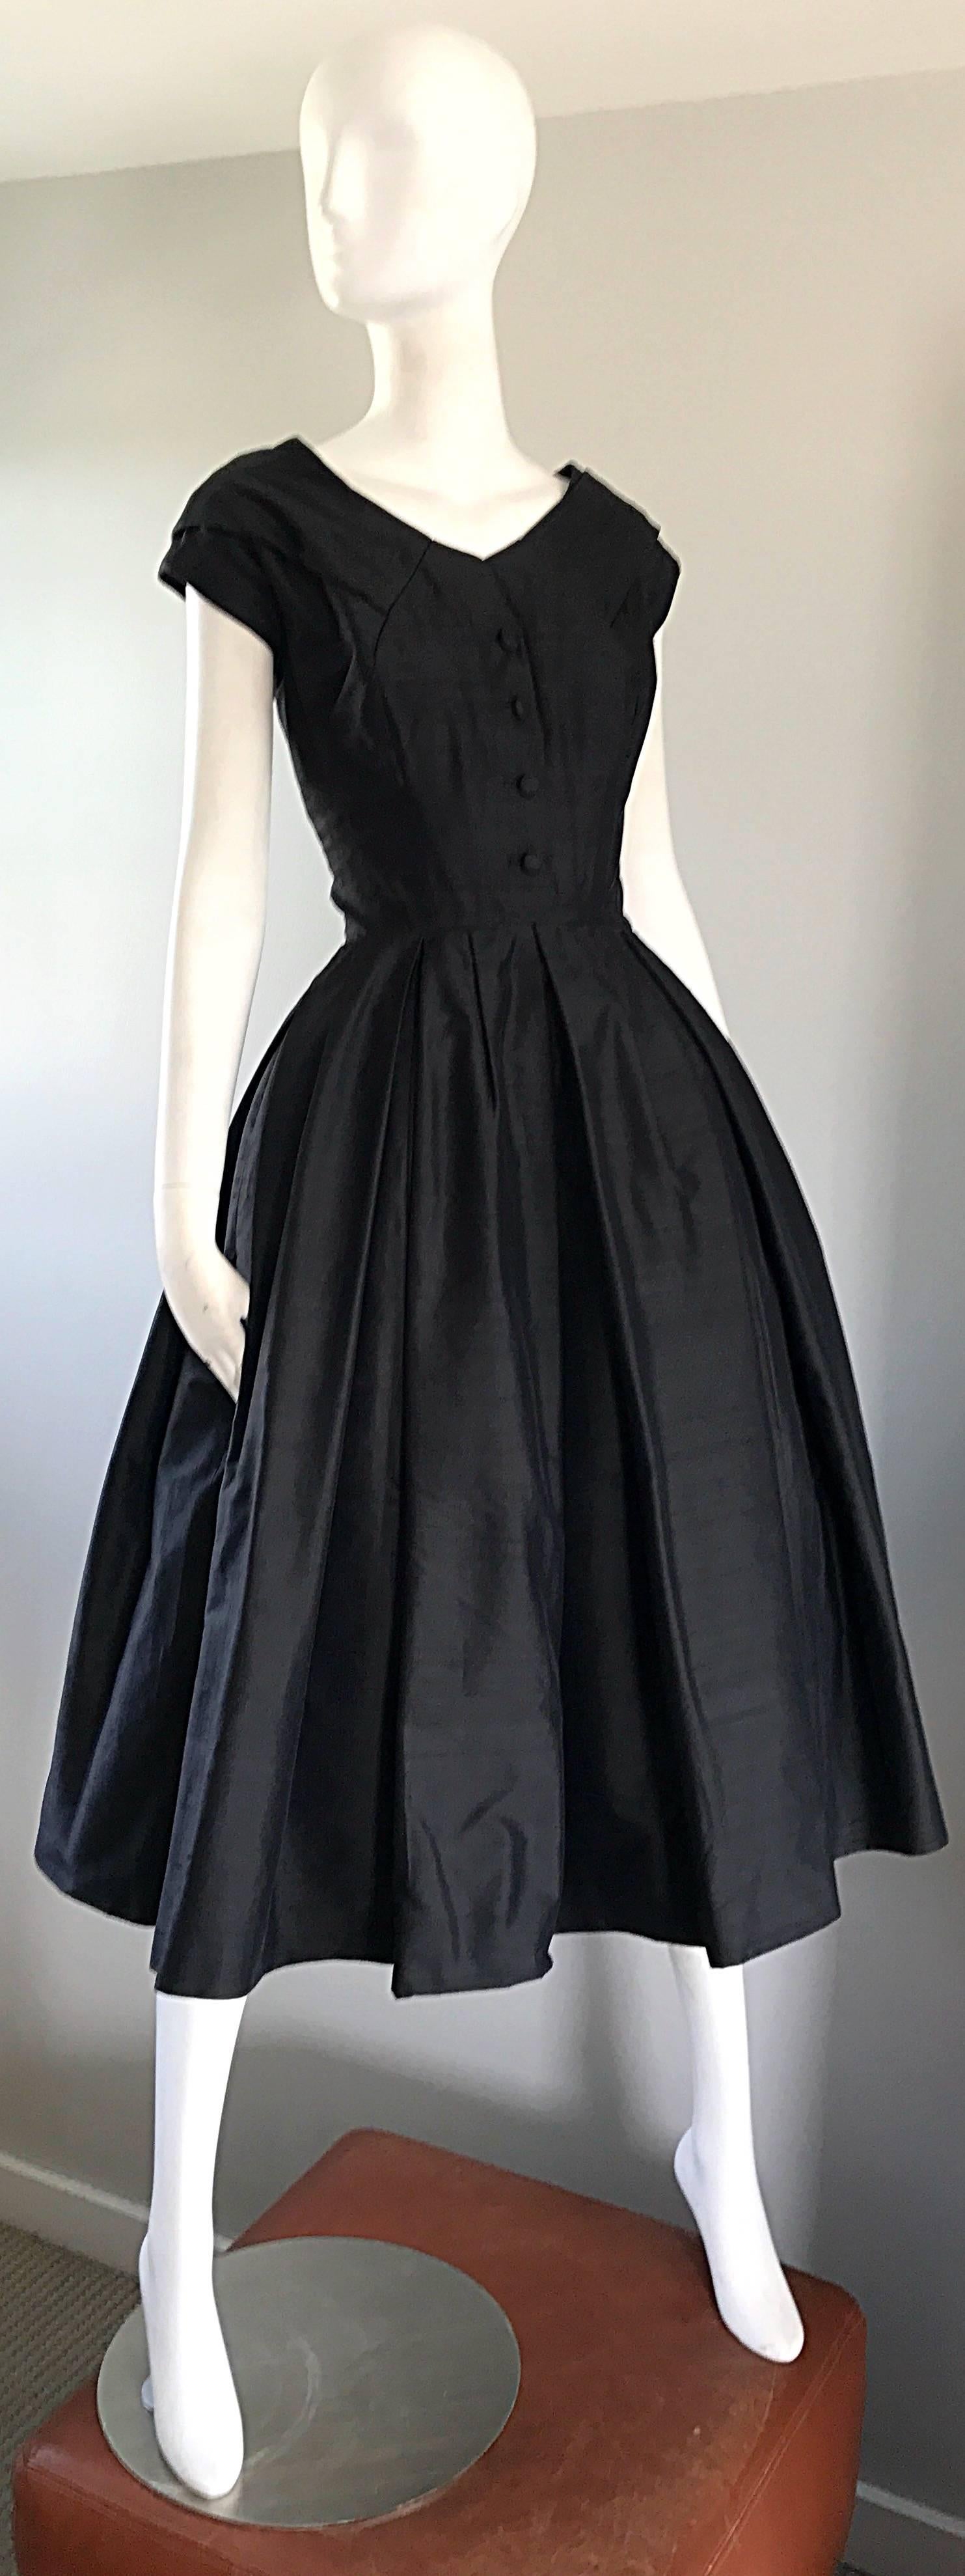 dior vintage dress 1950s